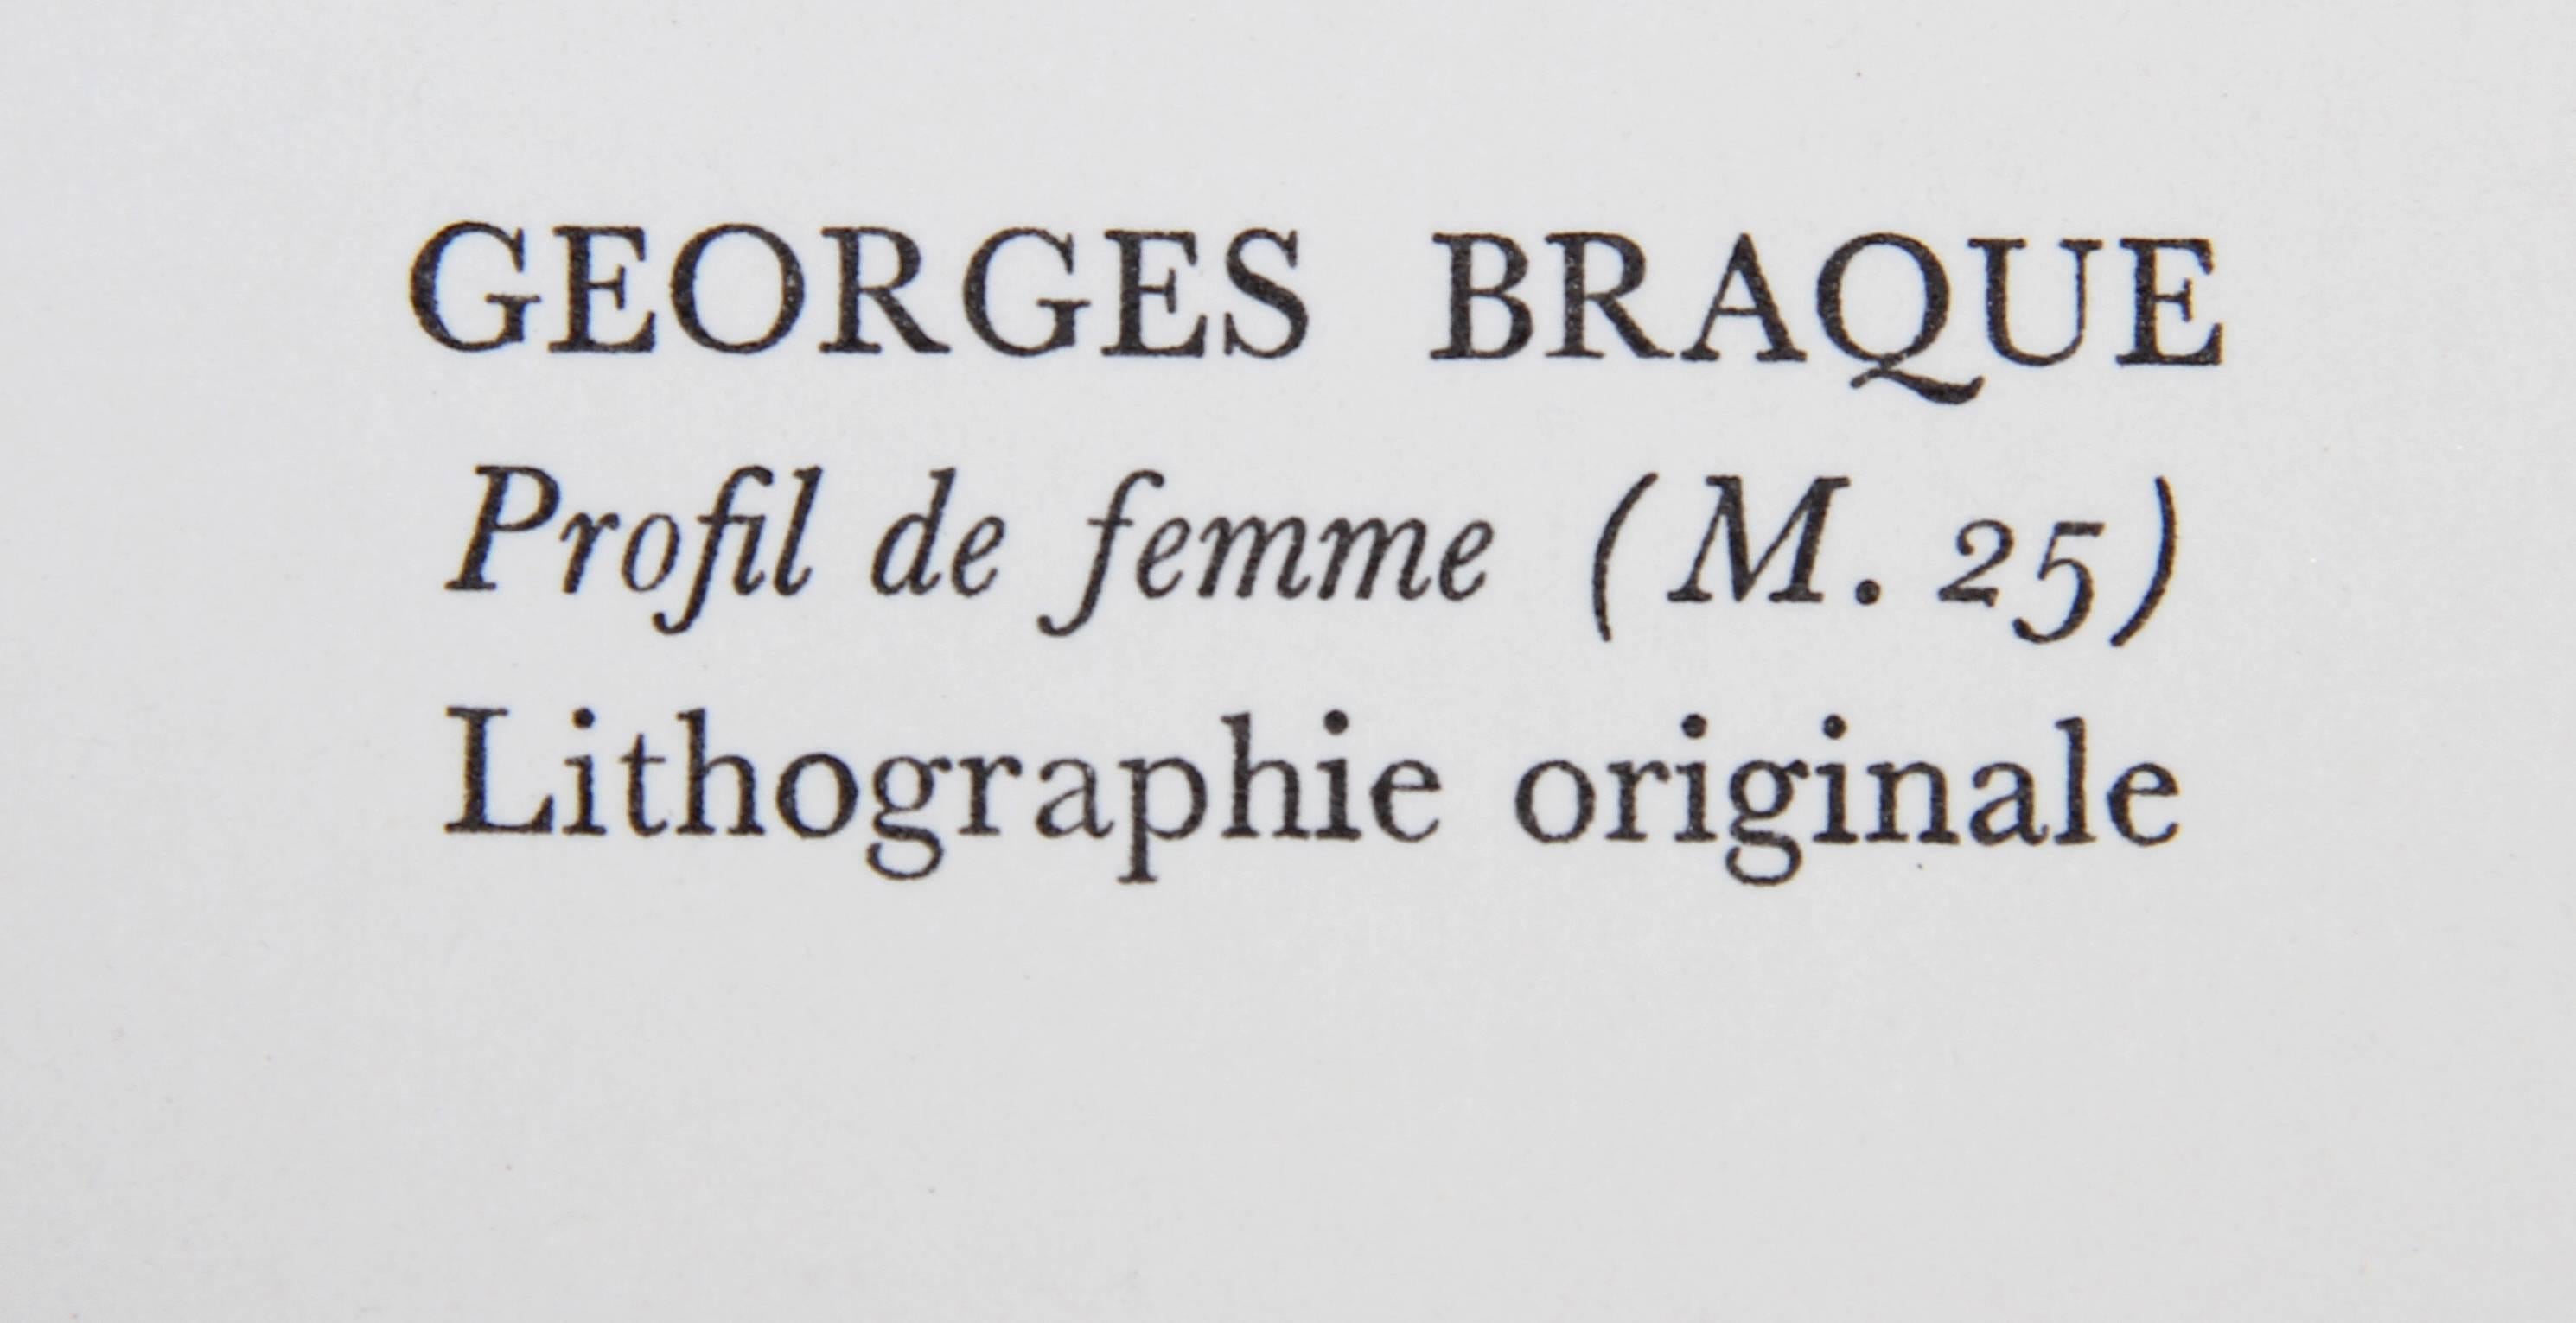 Profil de Femme from Souvenirs de Portraits d'Artistes by Georges Braque 2